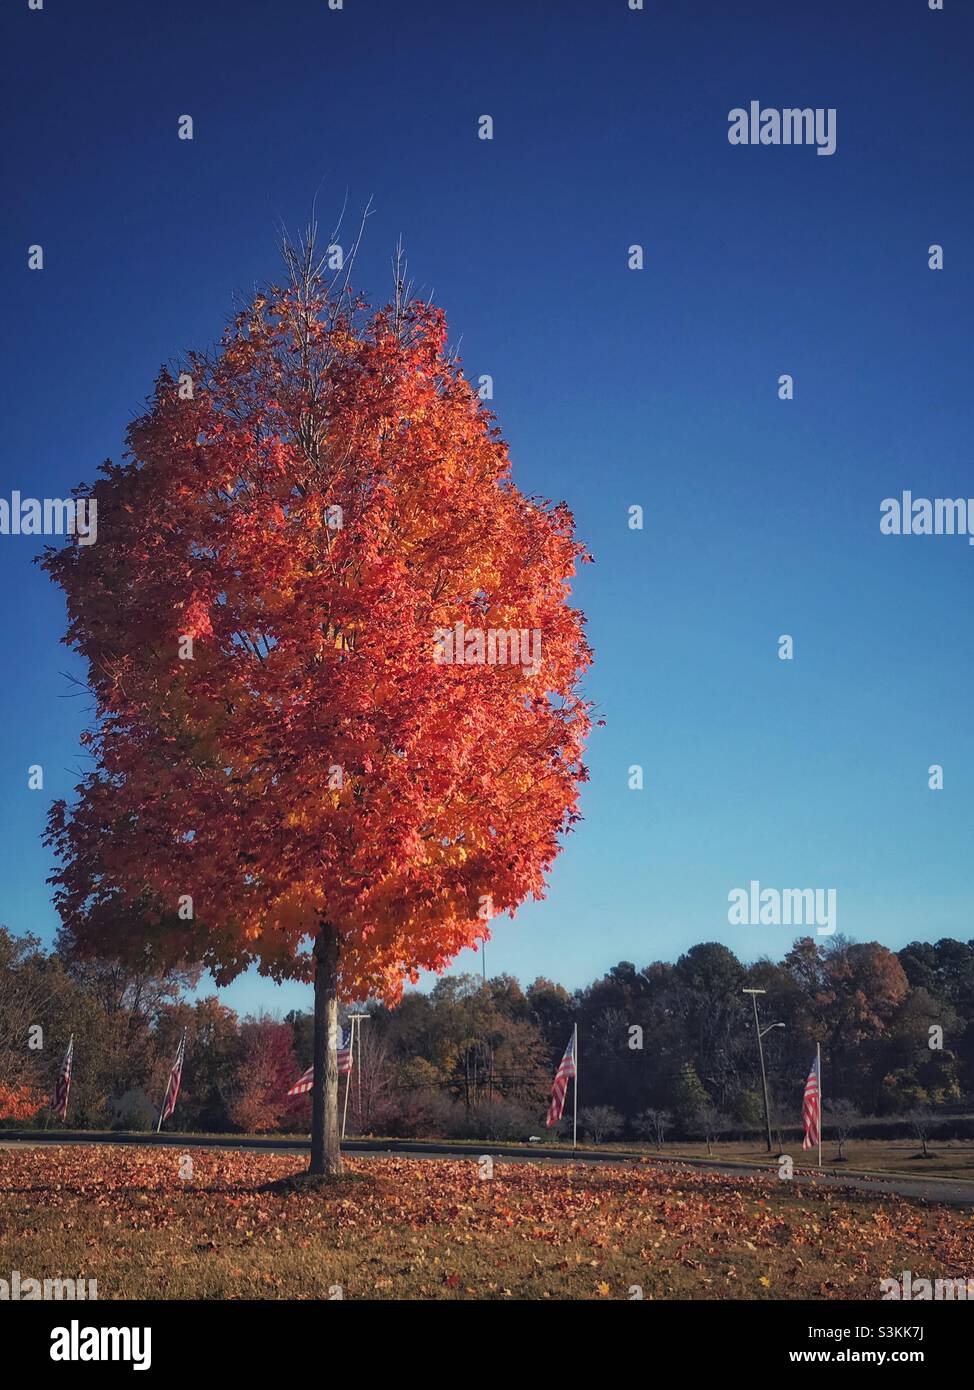 Drapeaux américains à côté d'un arbre d'automne à feuilles dorées Banque D'Images